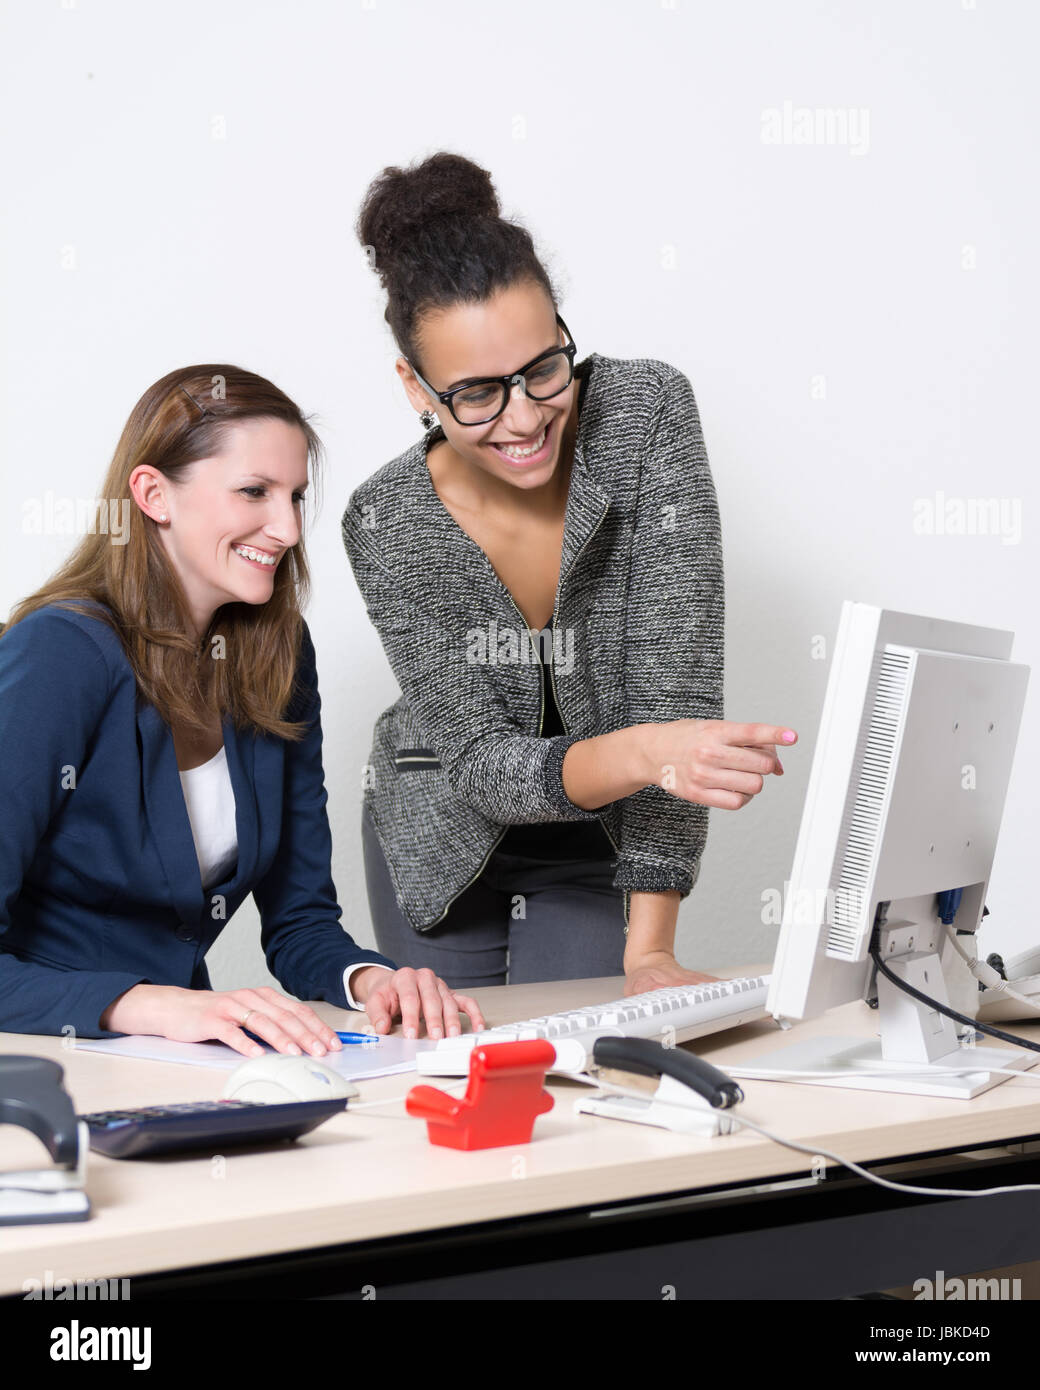 Zwei Frauen stehen bzw. sitzen vor dem Computer im Büro. Beide Frauen schauen zum Monitor und lächeln. Eine Frau zeigt zum Monitor. Foto Stock